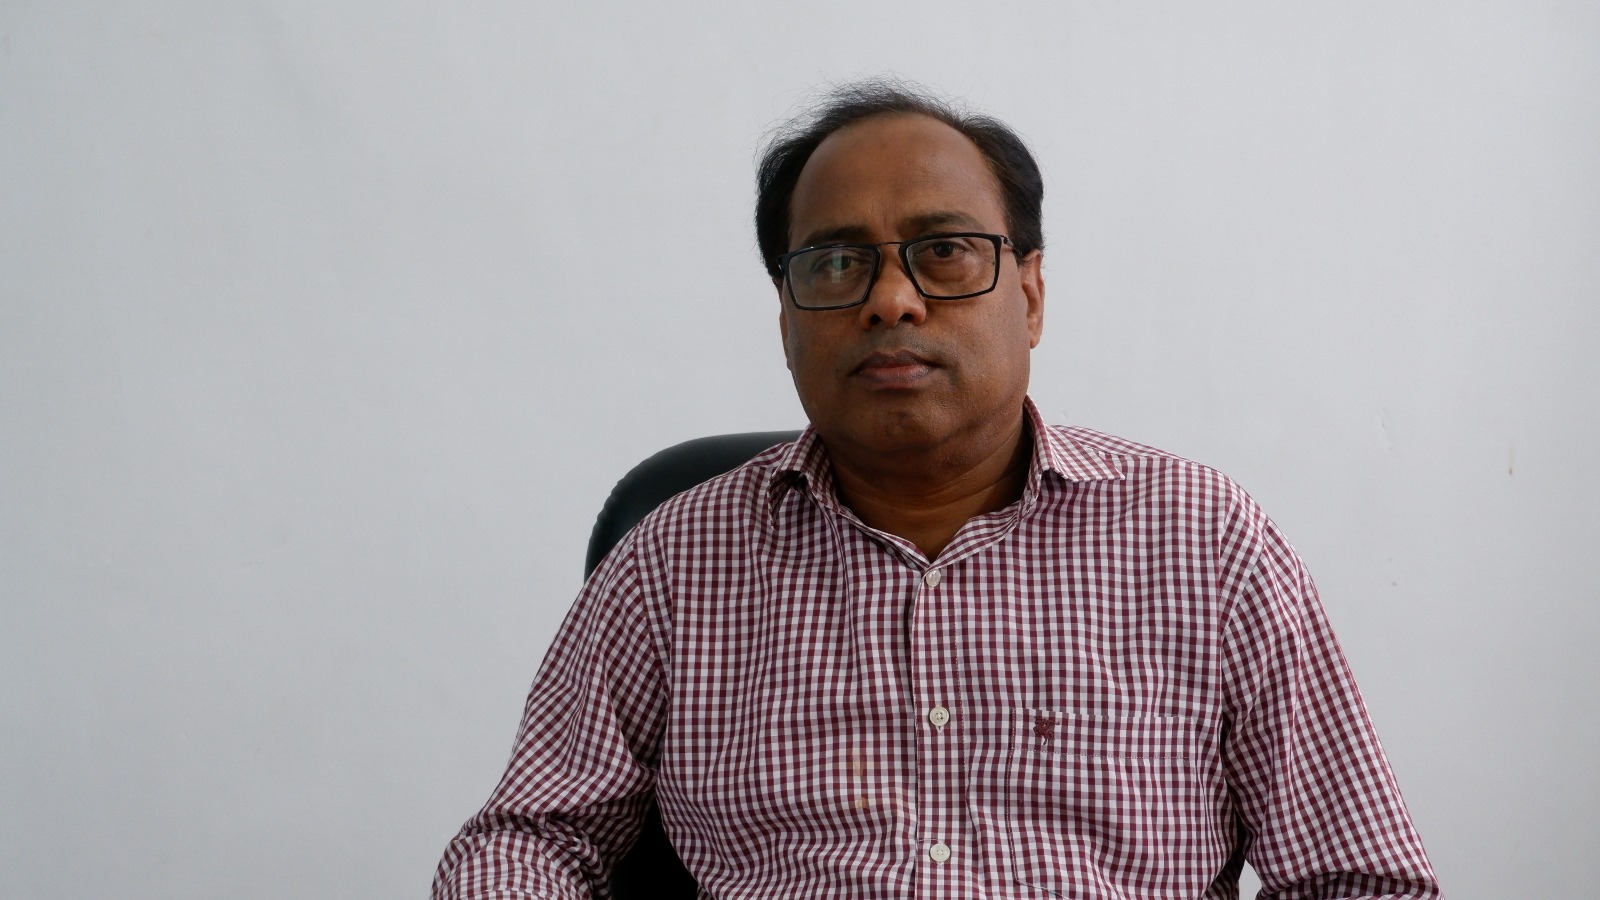 एसएसजेयू: अमित कुमार त्रिपाठी को मिली बड़ी जिम्मेदारी, विश्वविद्यालय के वित्त अधिकारी व ट्रेजरी ऑफिसर के रूप में नियुक्त